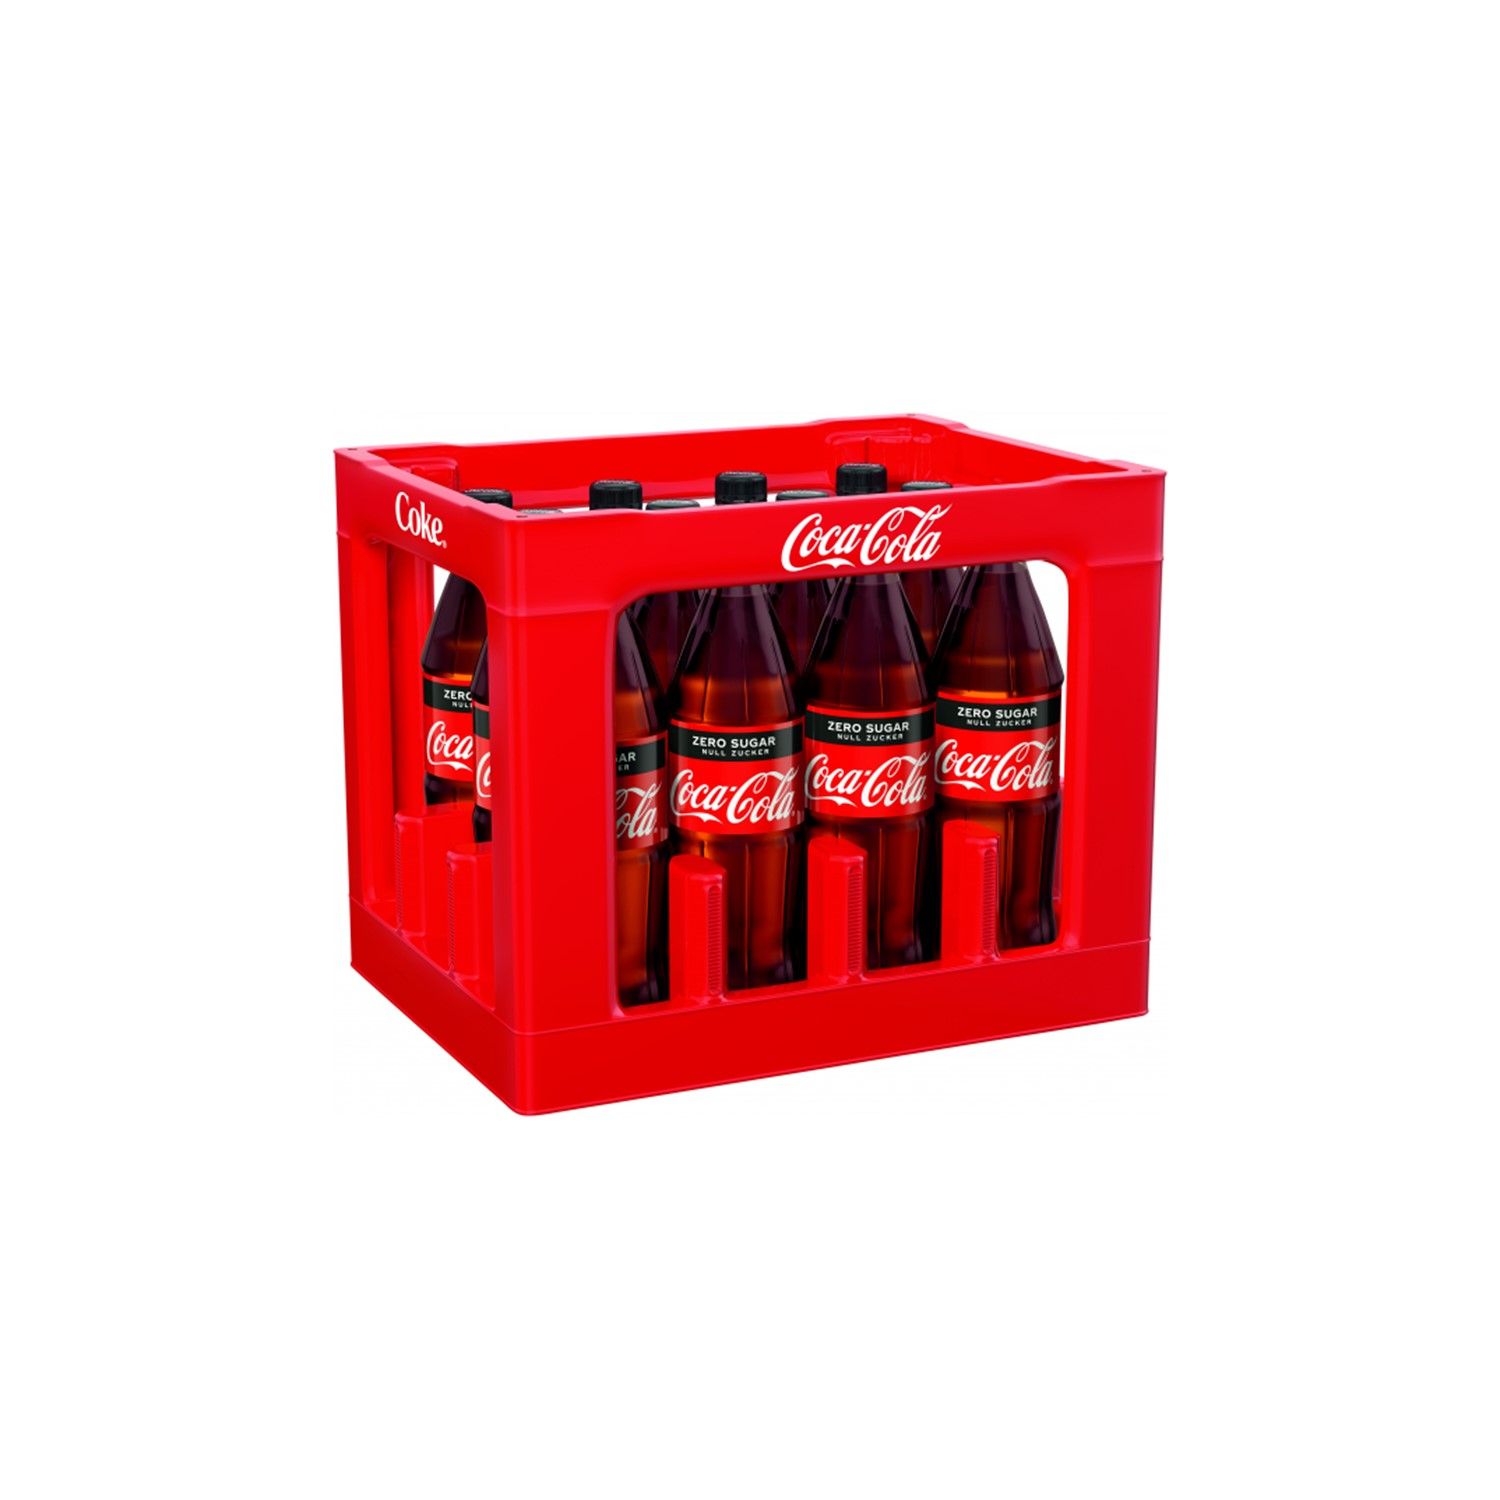 Coca - Cola zero